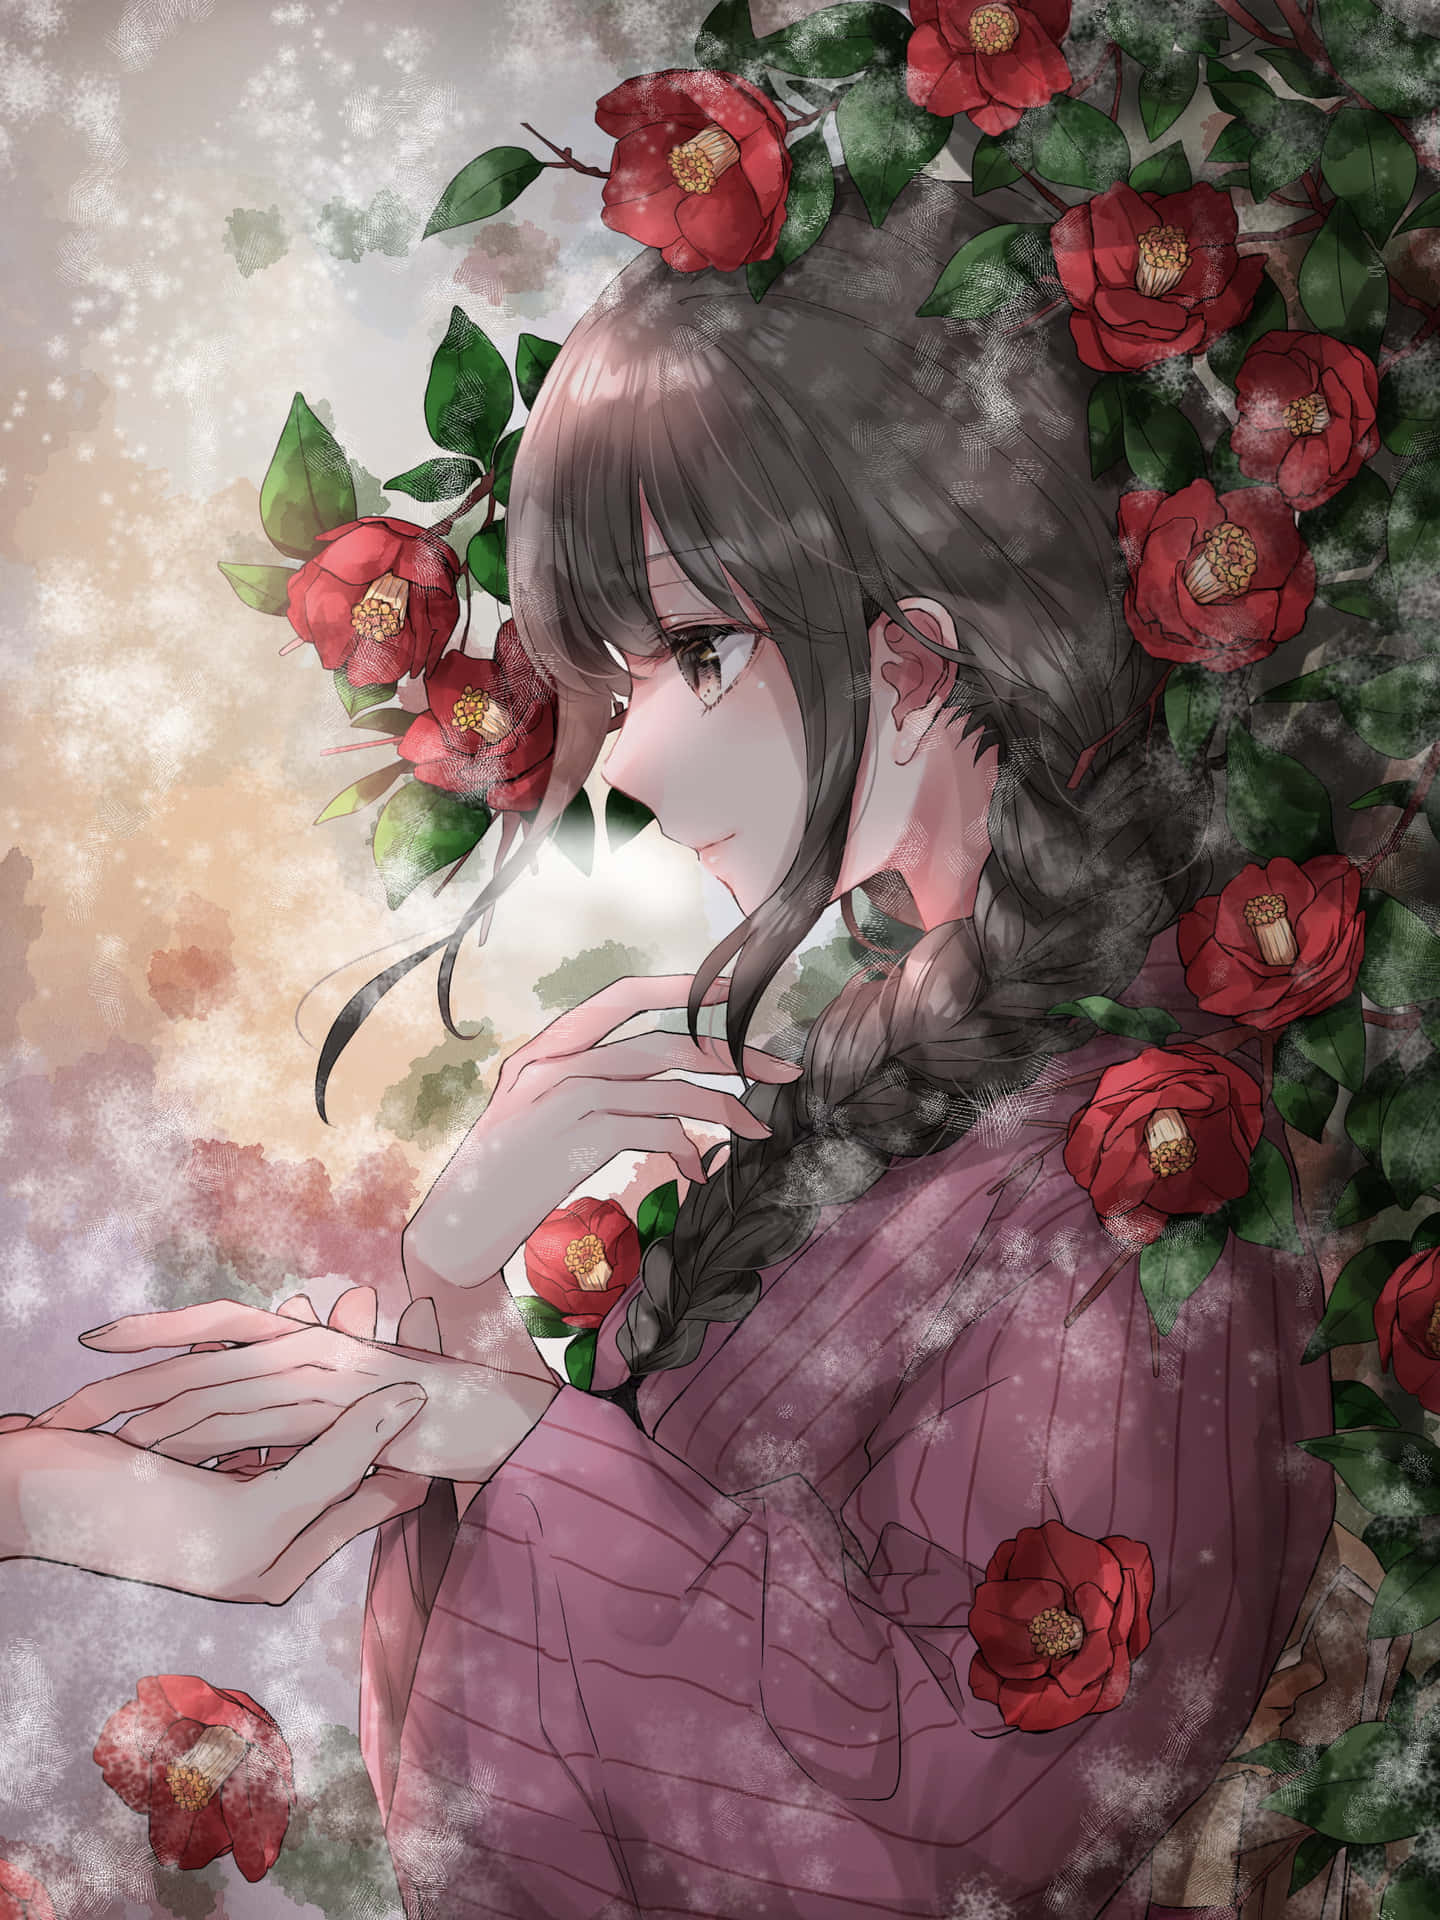 Imagende Perfil Estética De Una Chica De Anime Con Una Rosa